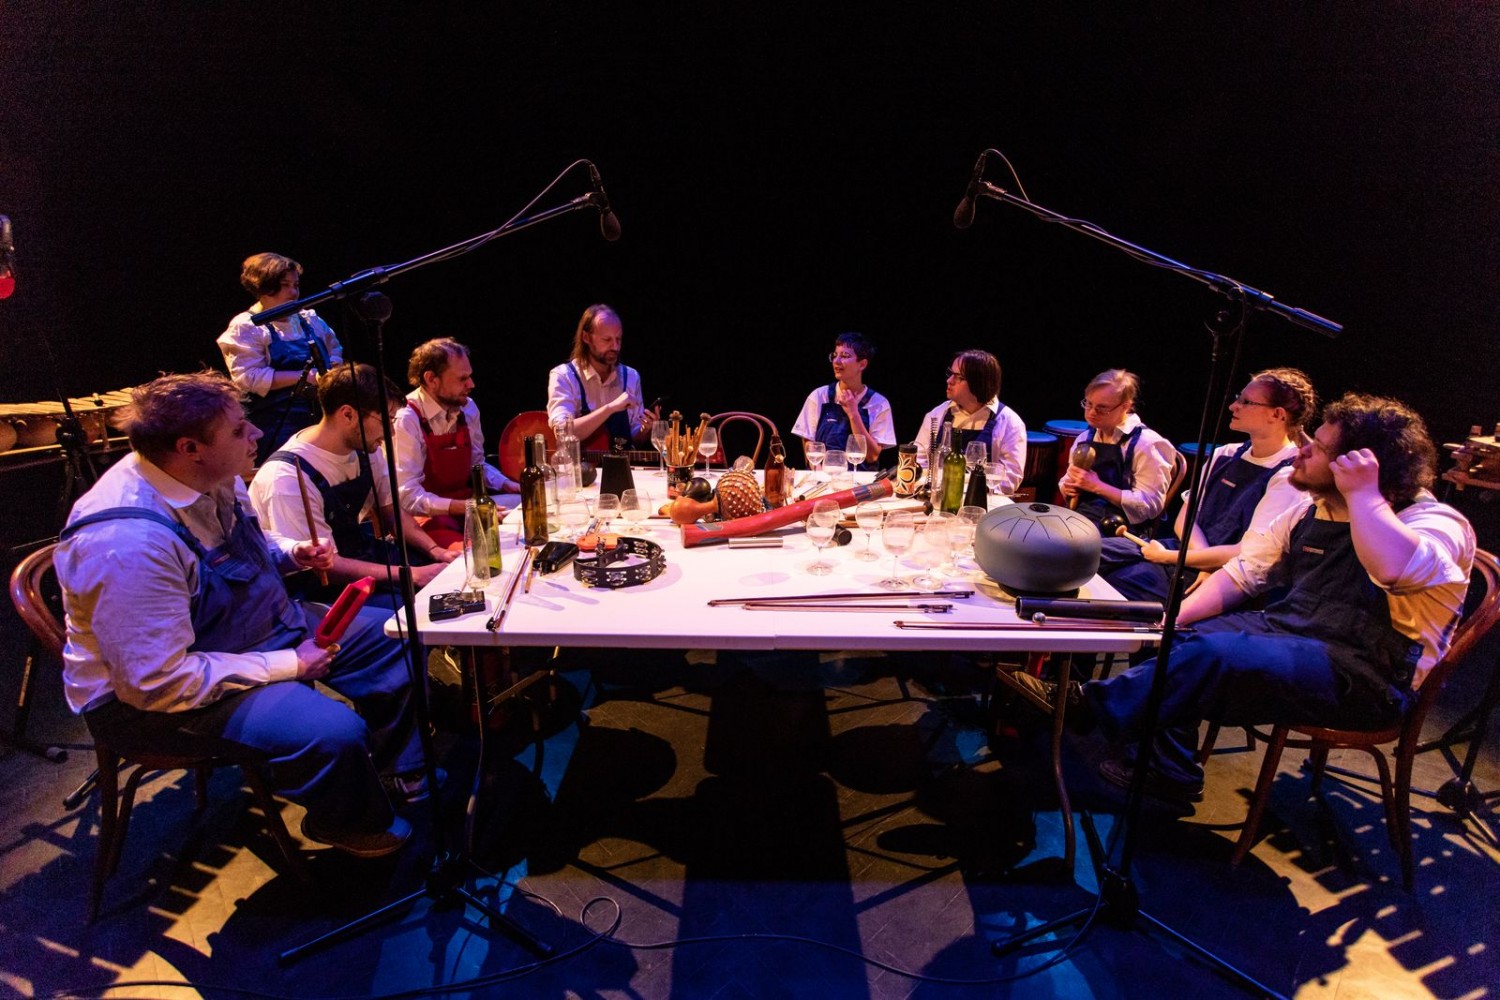 Zespół Remont Pomp gra koncert. Dziesięć osób w białych koszulach i niebieskich fatuchach siedzi przy wielkim stole, na którym są instrumenty